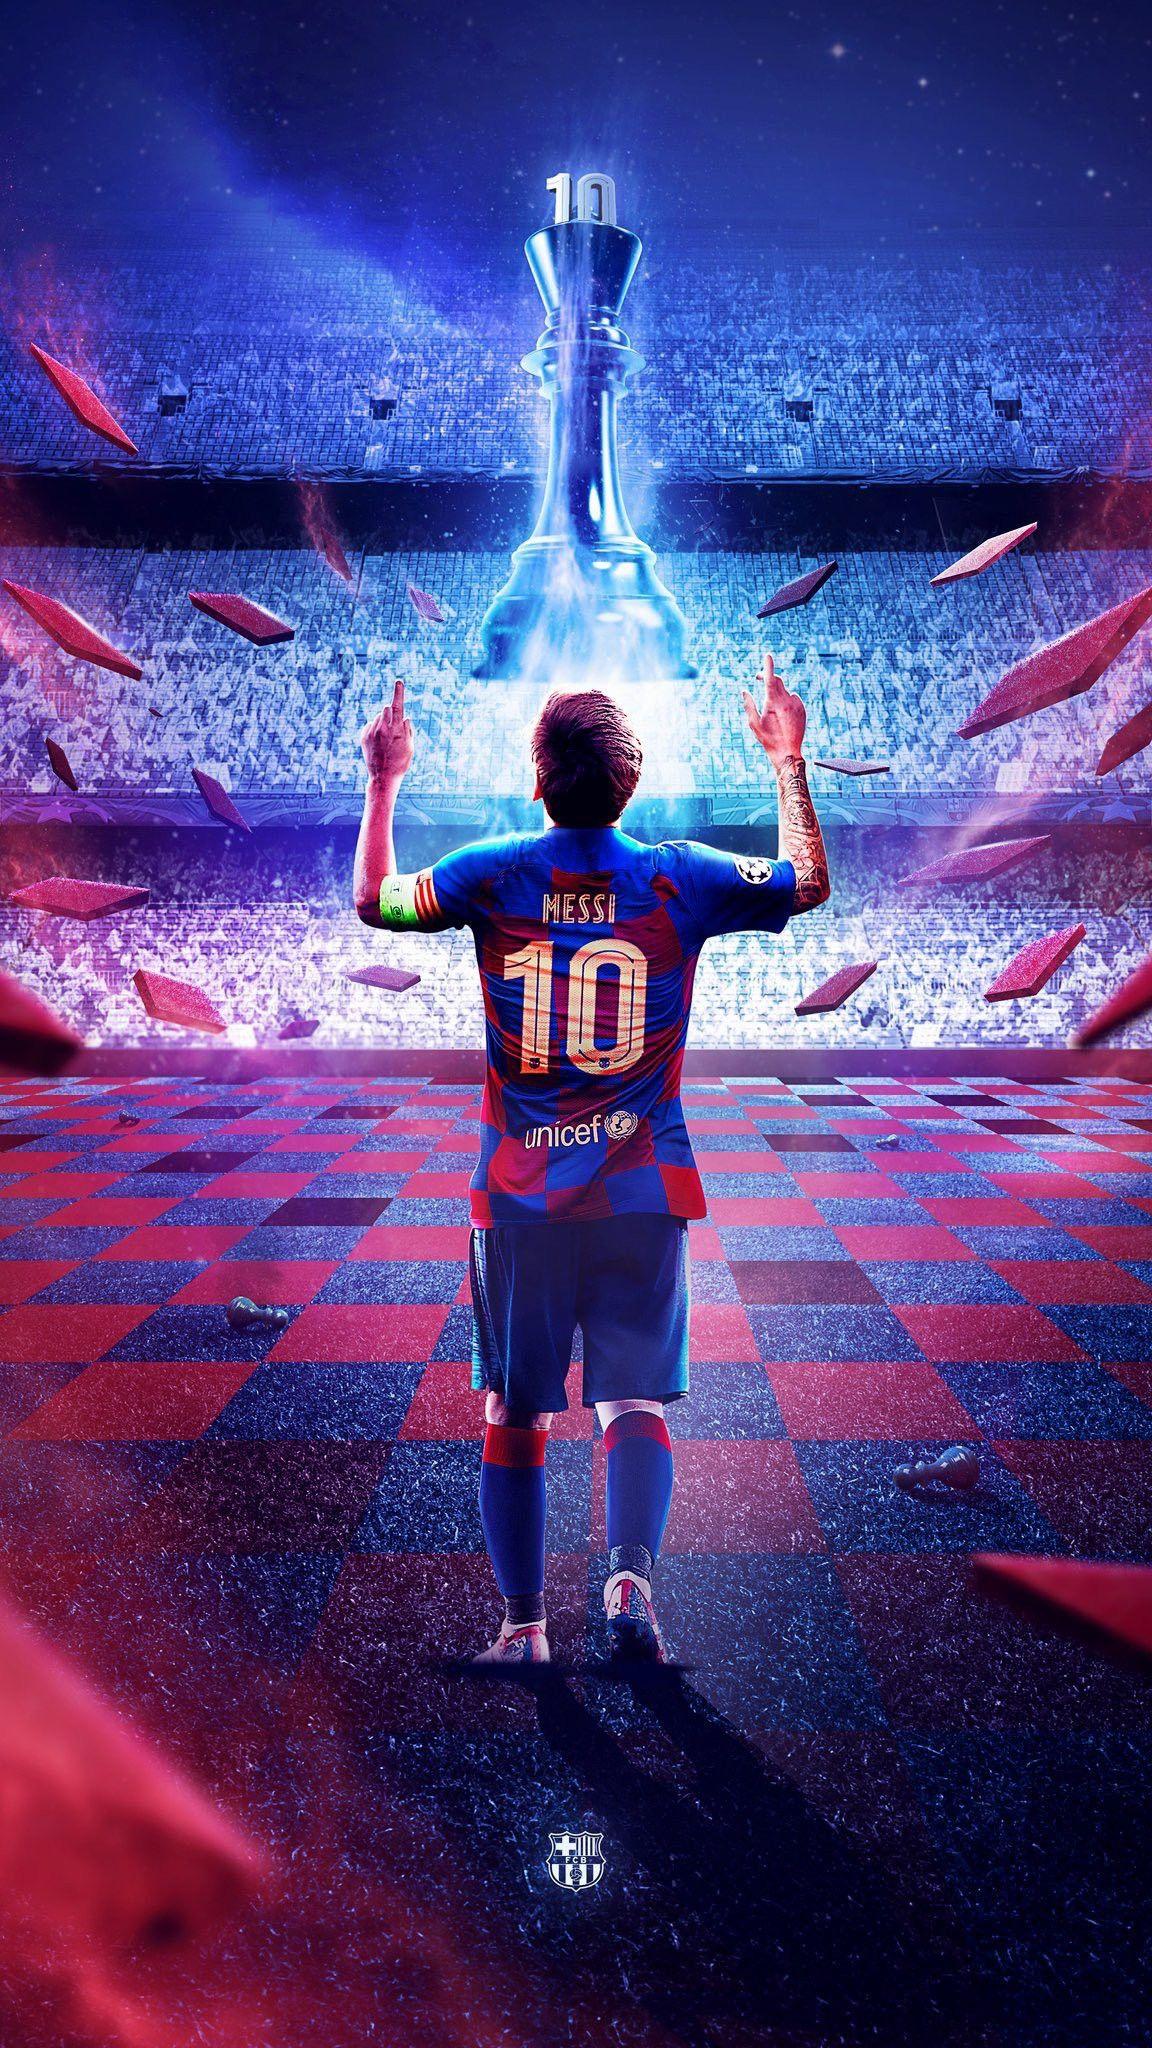 Hình ảnh Lionel Messi sắc nét và chất lượng cao với độ phân giải 4K sẽ đưa bạn đến gần hơn với ngôi sao bóng đá nổi tiếng này. Hãy tận hưởng không gian đẹp với Messi 4K wallpaper.